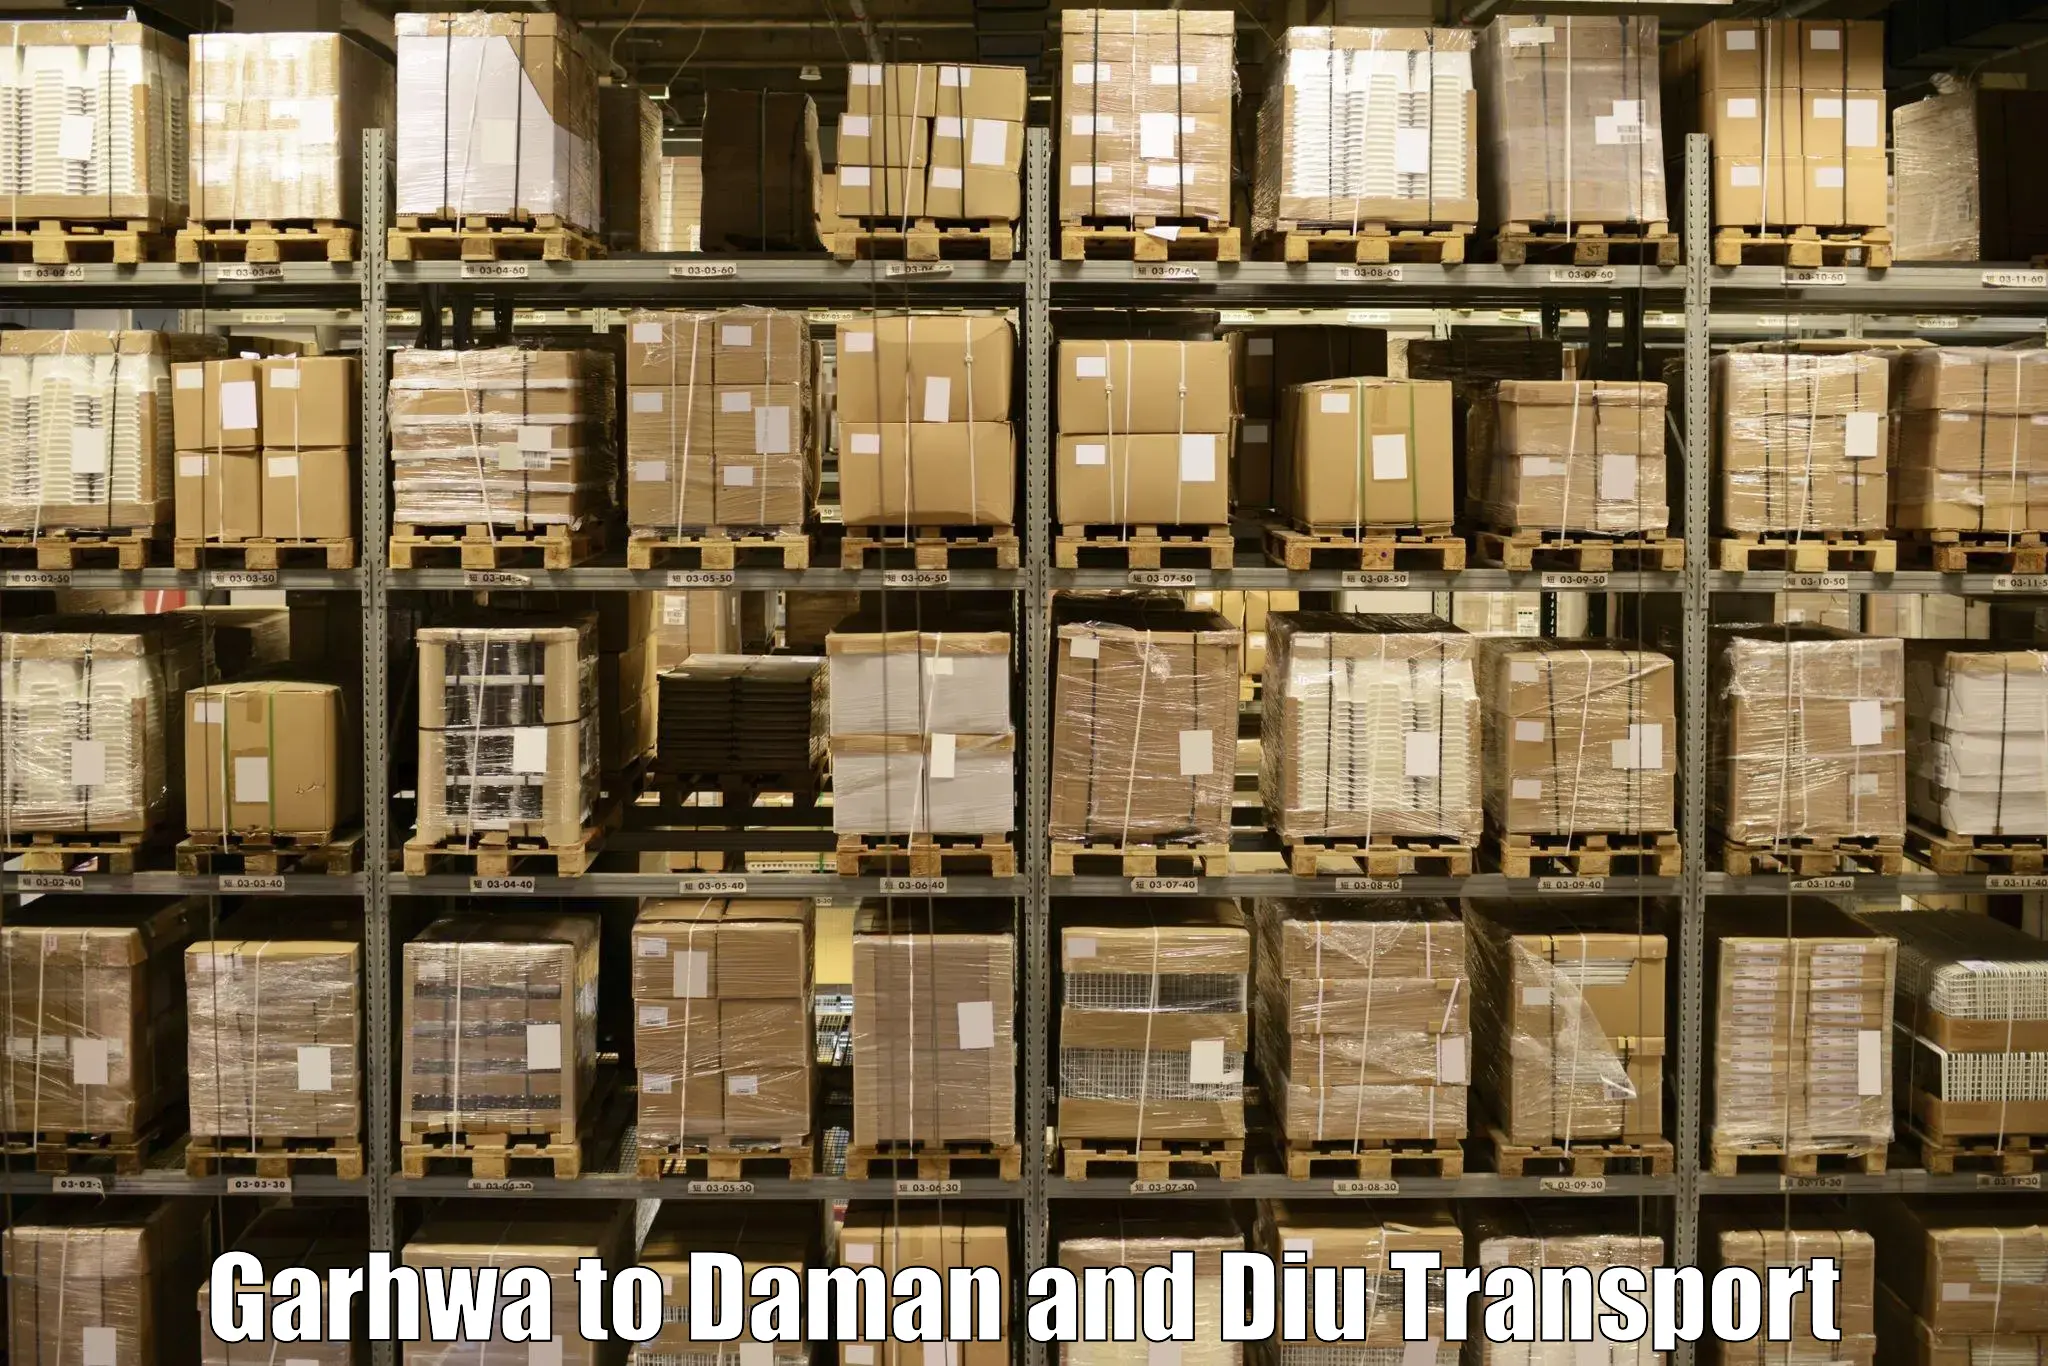 Daily transport service Garhwa to Daman